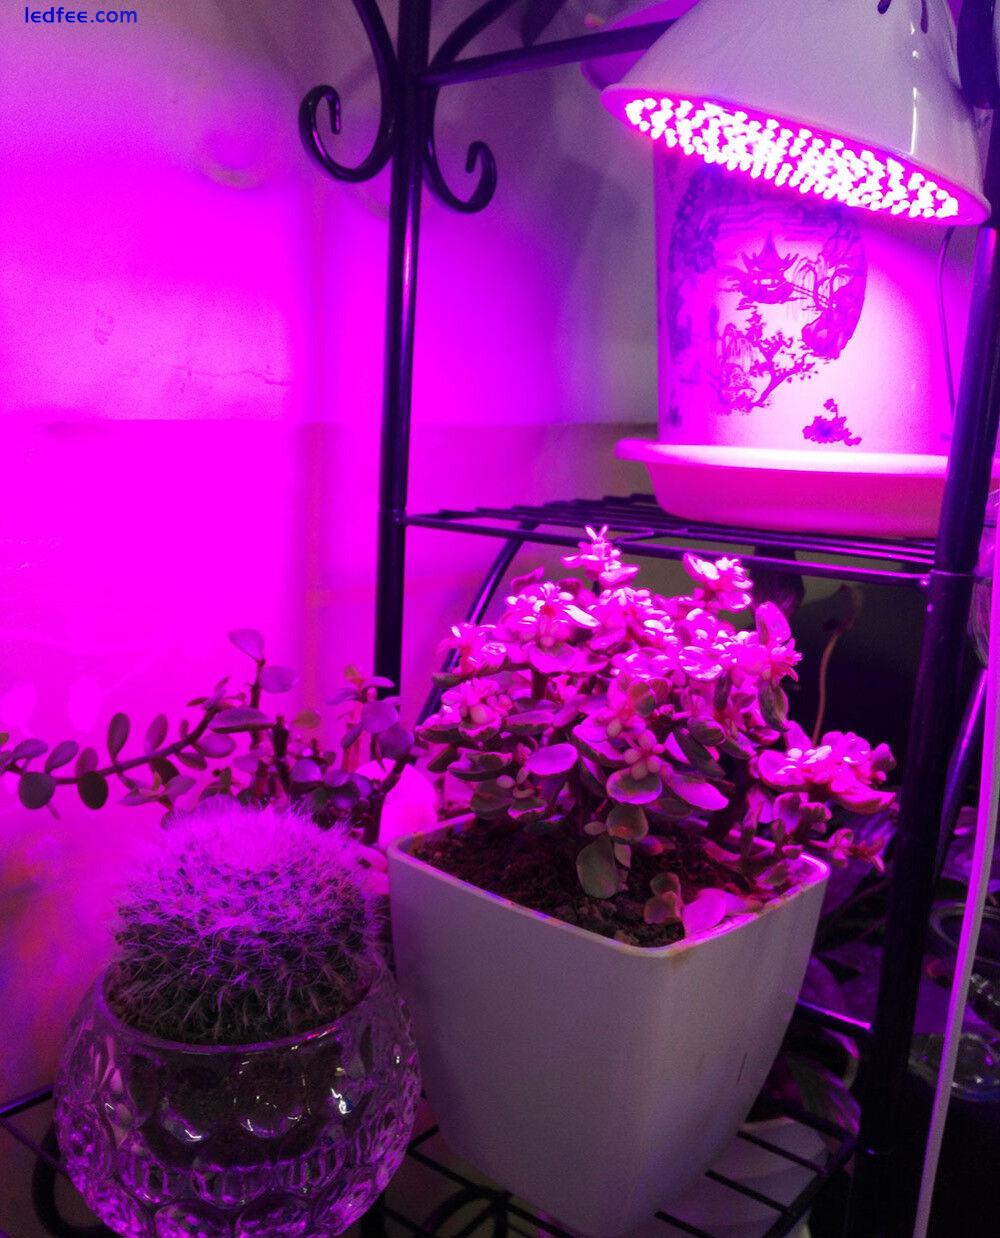 Greenhouse Indoor Lamp Light Veg Led Plant Grow hydro E27 Bulb for flower Garden 2 